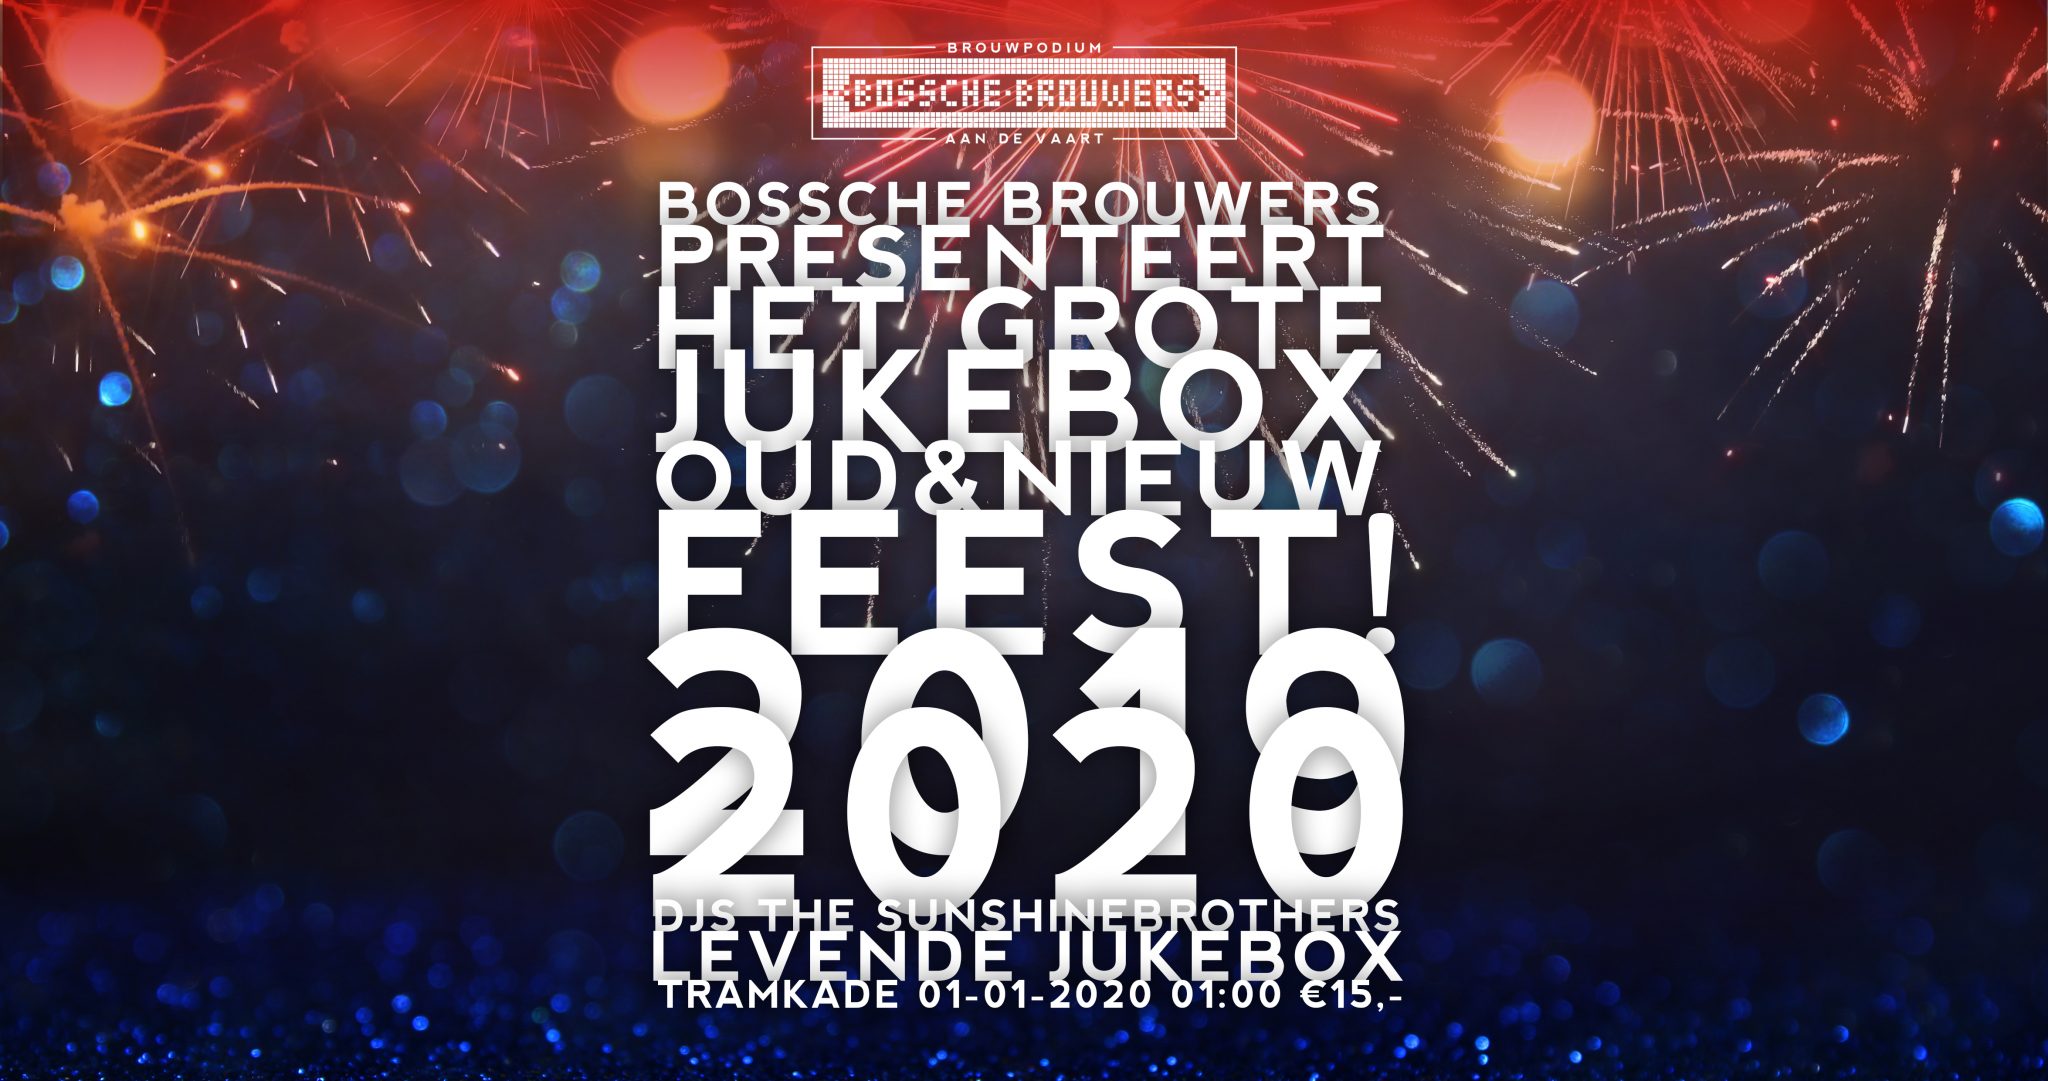 Jukebox Oud en Nieuw 2020